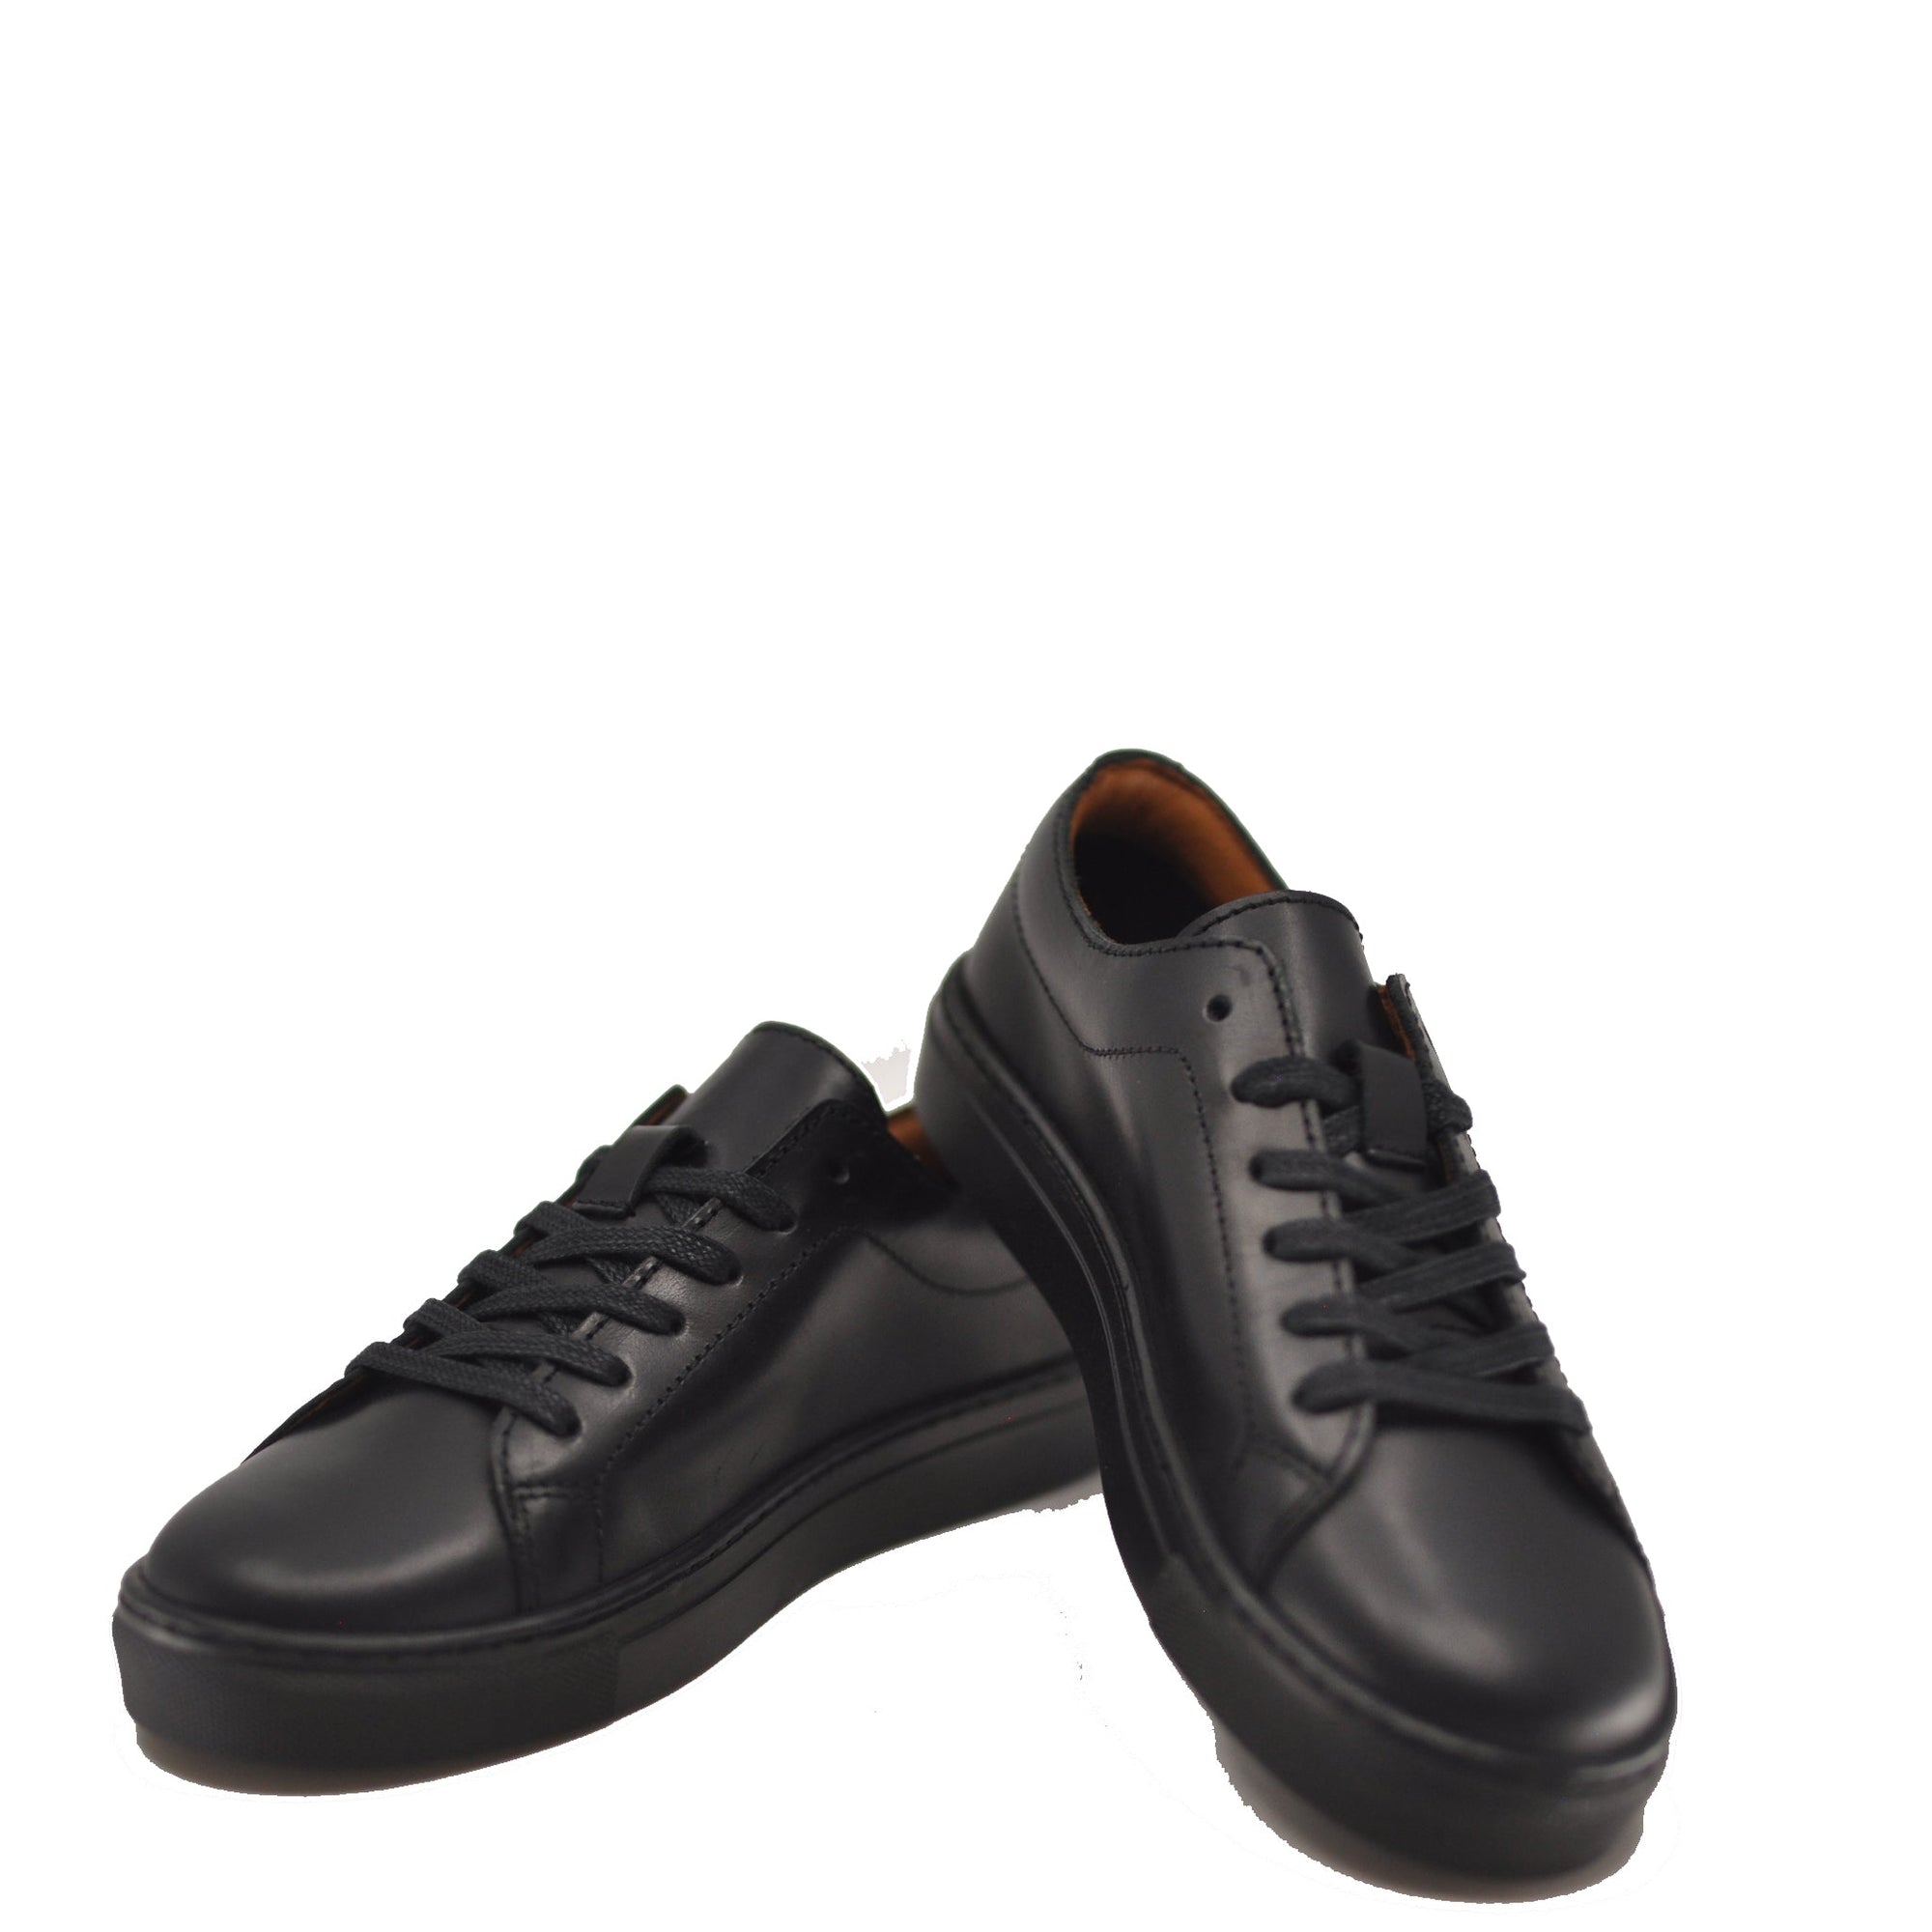 Atlanta Mocassin Black Leather Sneaker-Tassel Children Shoes